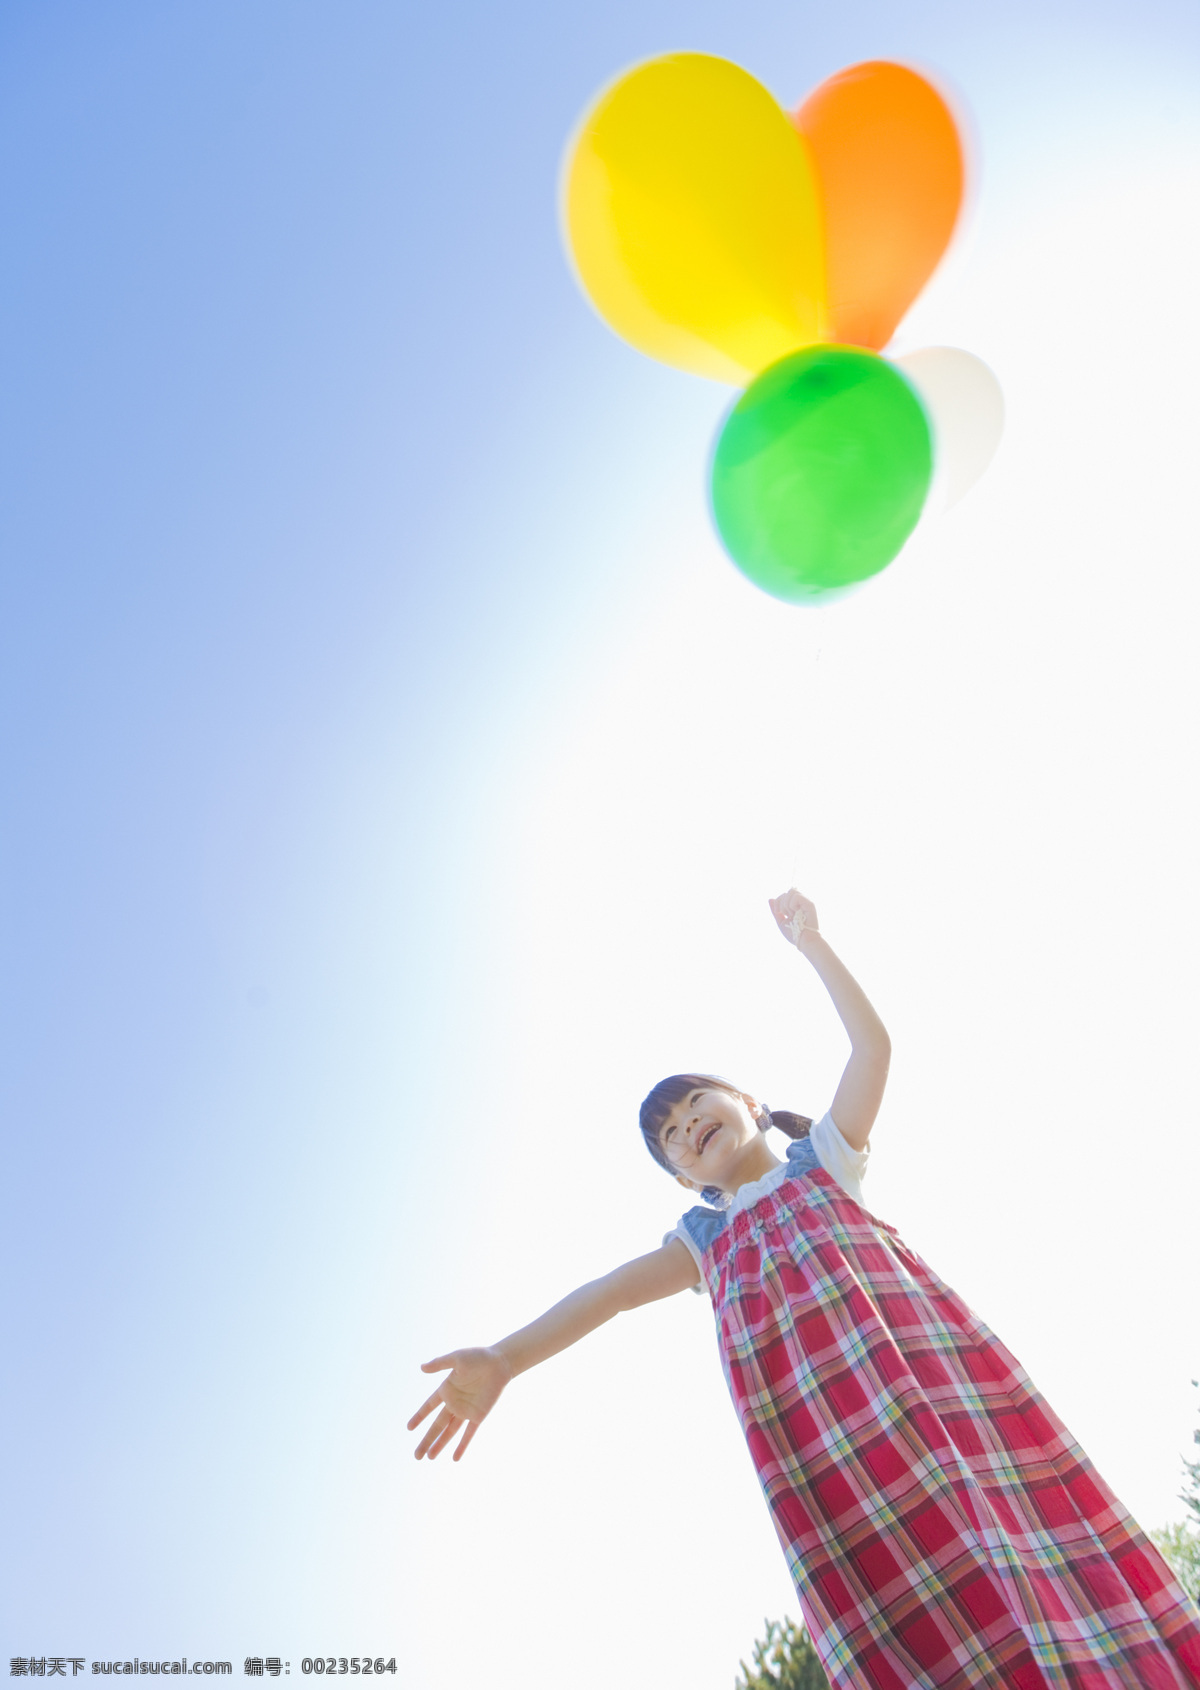 放飞 气球 可爱 儿童 小孩 孩子 小女孩 儿童节 礼物 生活人物 人物图片